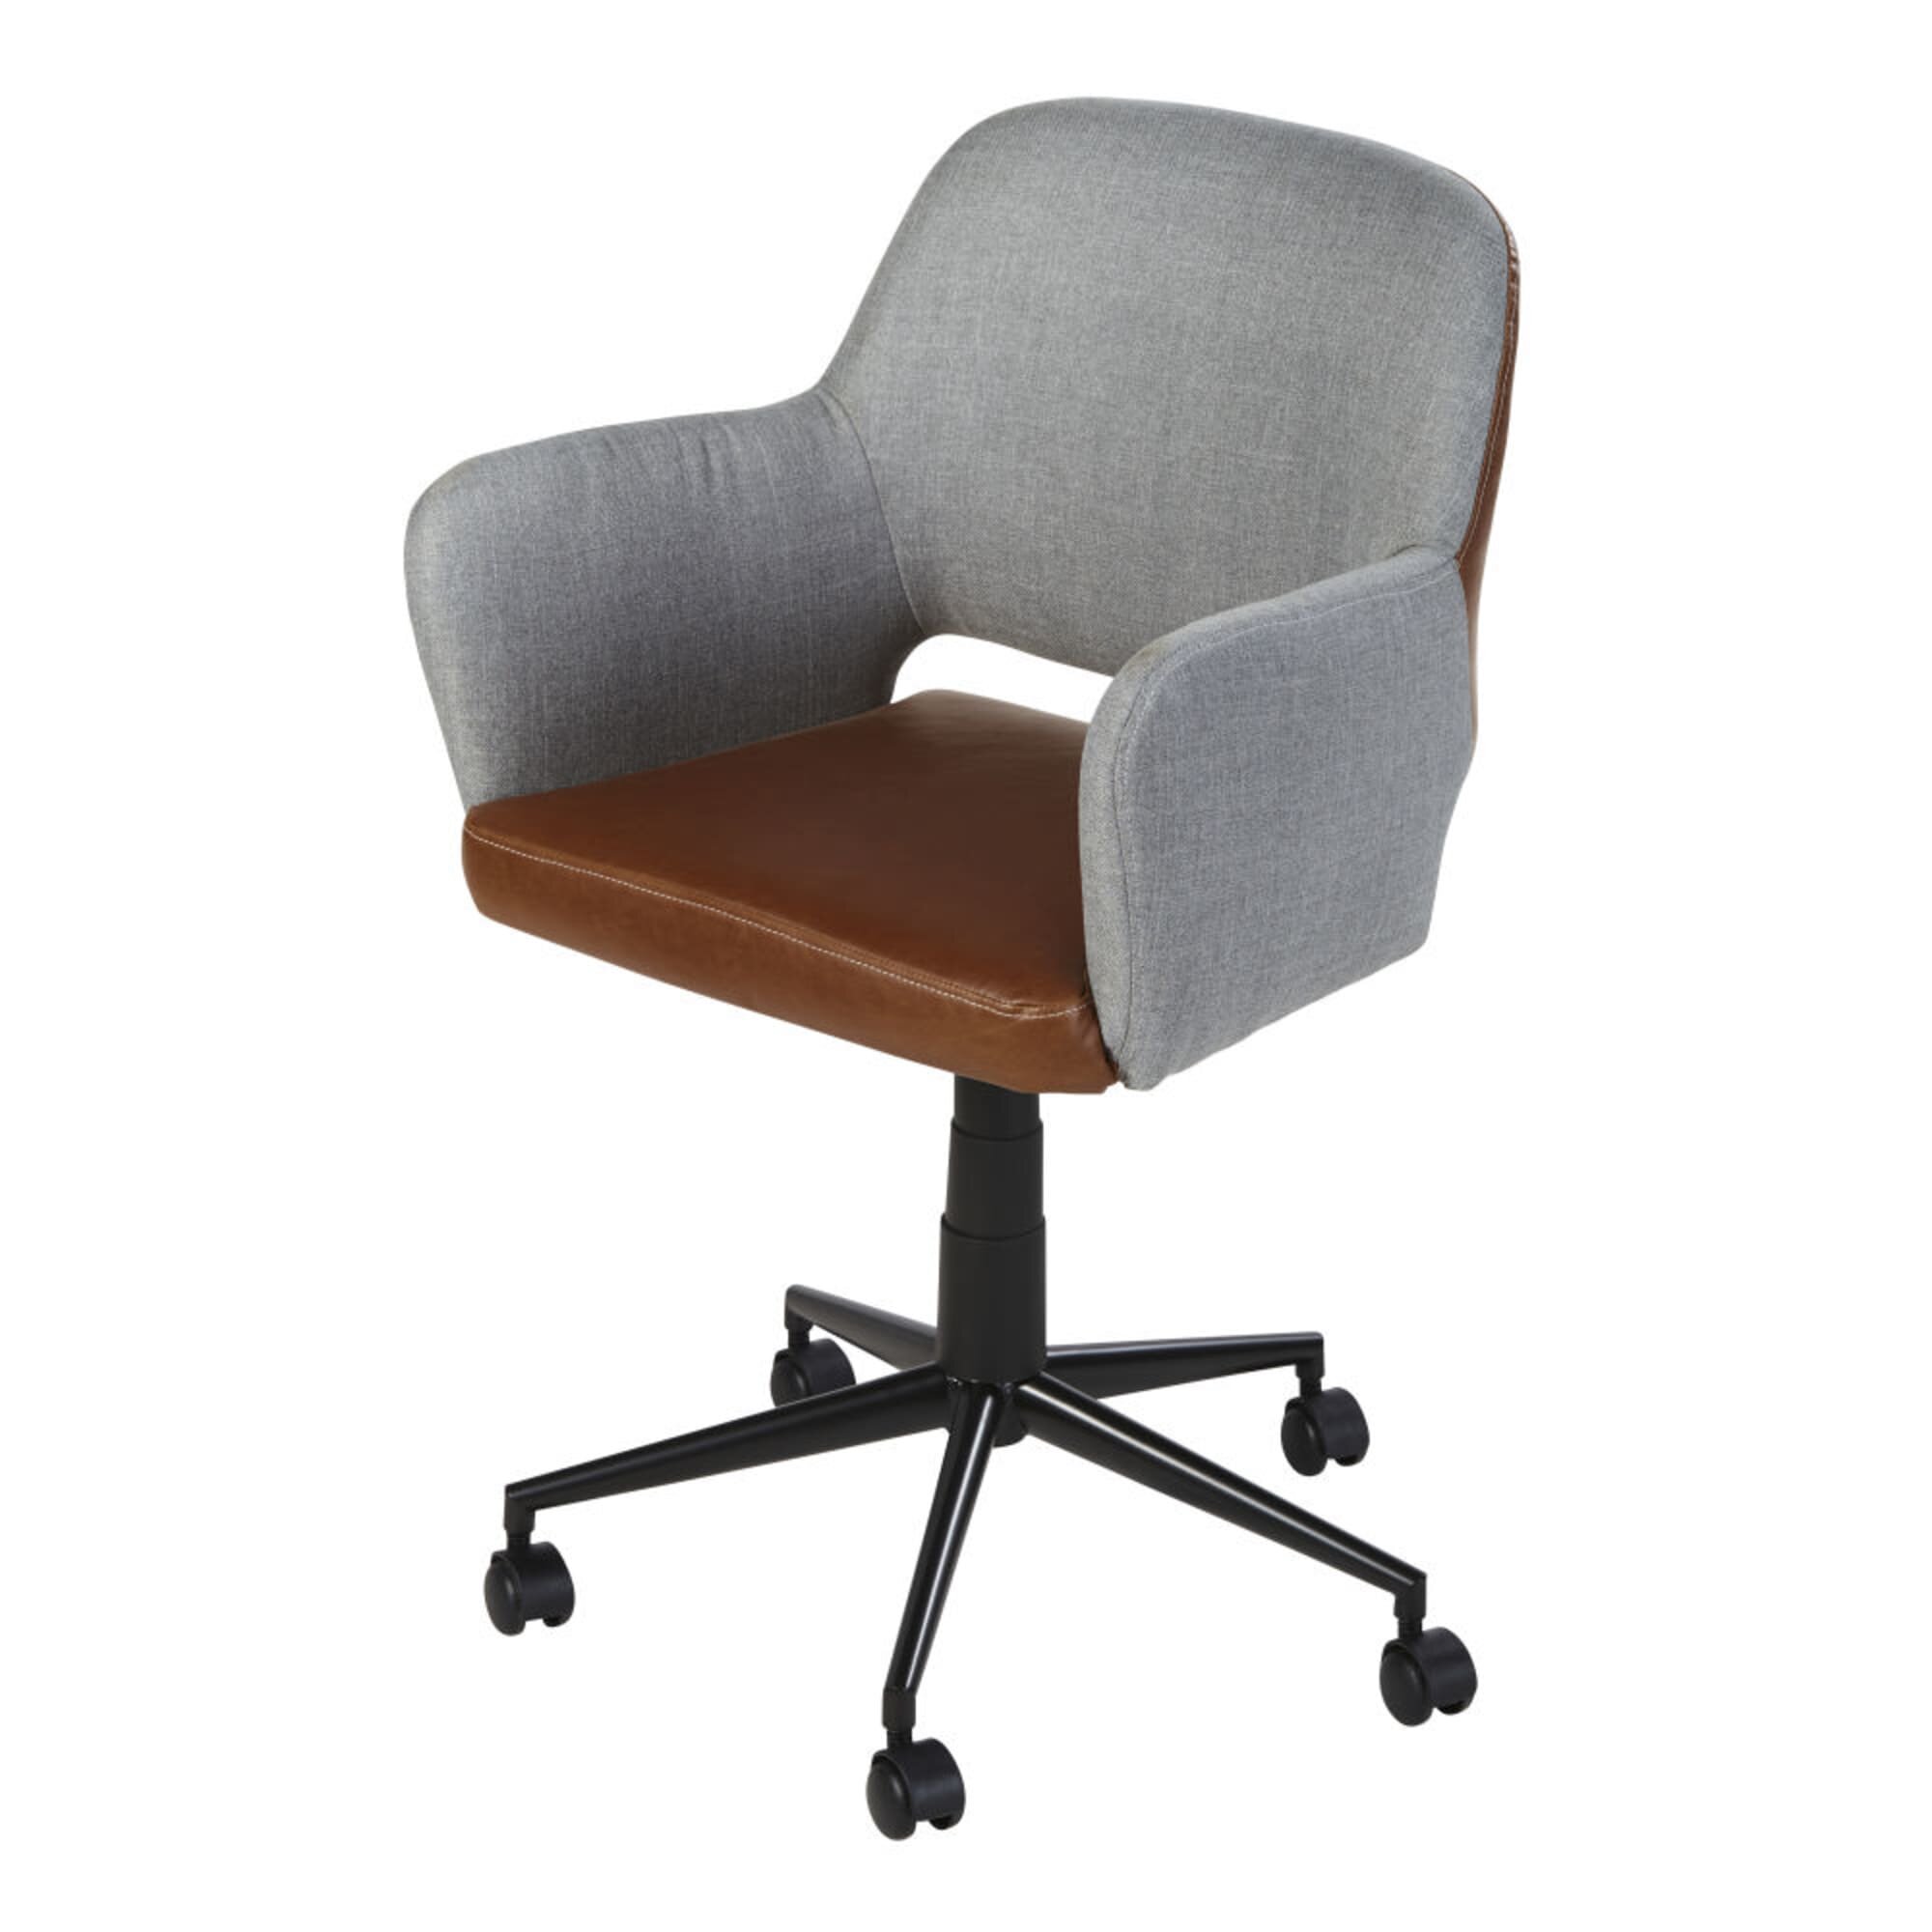 bestof-chaise-bureau-pascher-fauteuil-de-bureau-reglable-a-roulettes-bicolore-et-metal-noir-1000-10-7-187418_1.jpg